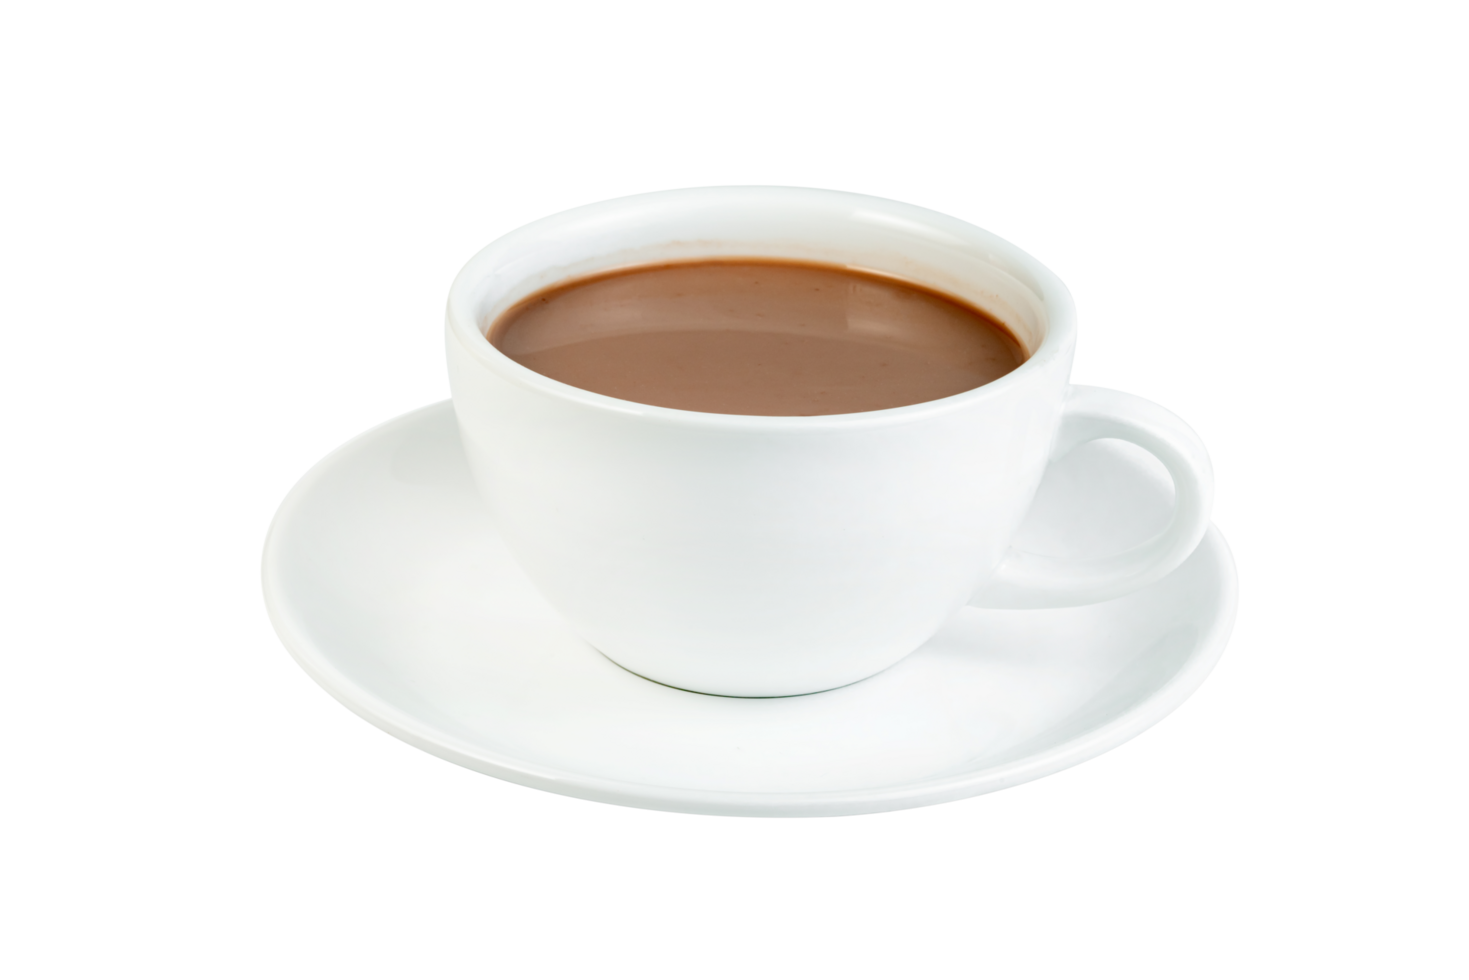 varm choklad med kaffe kopp isolerat png